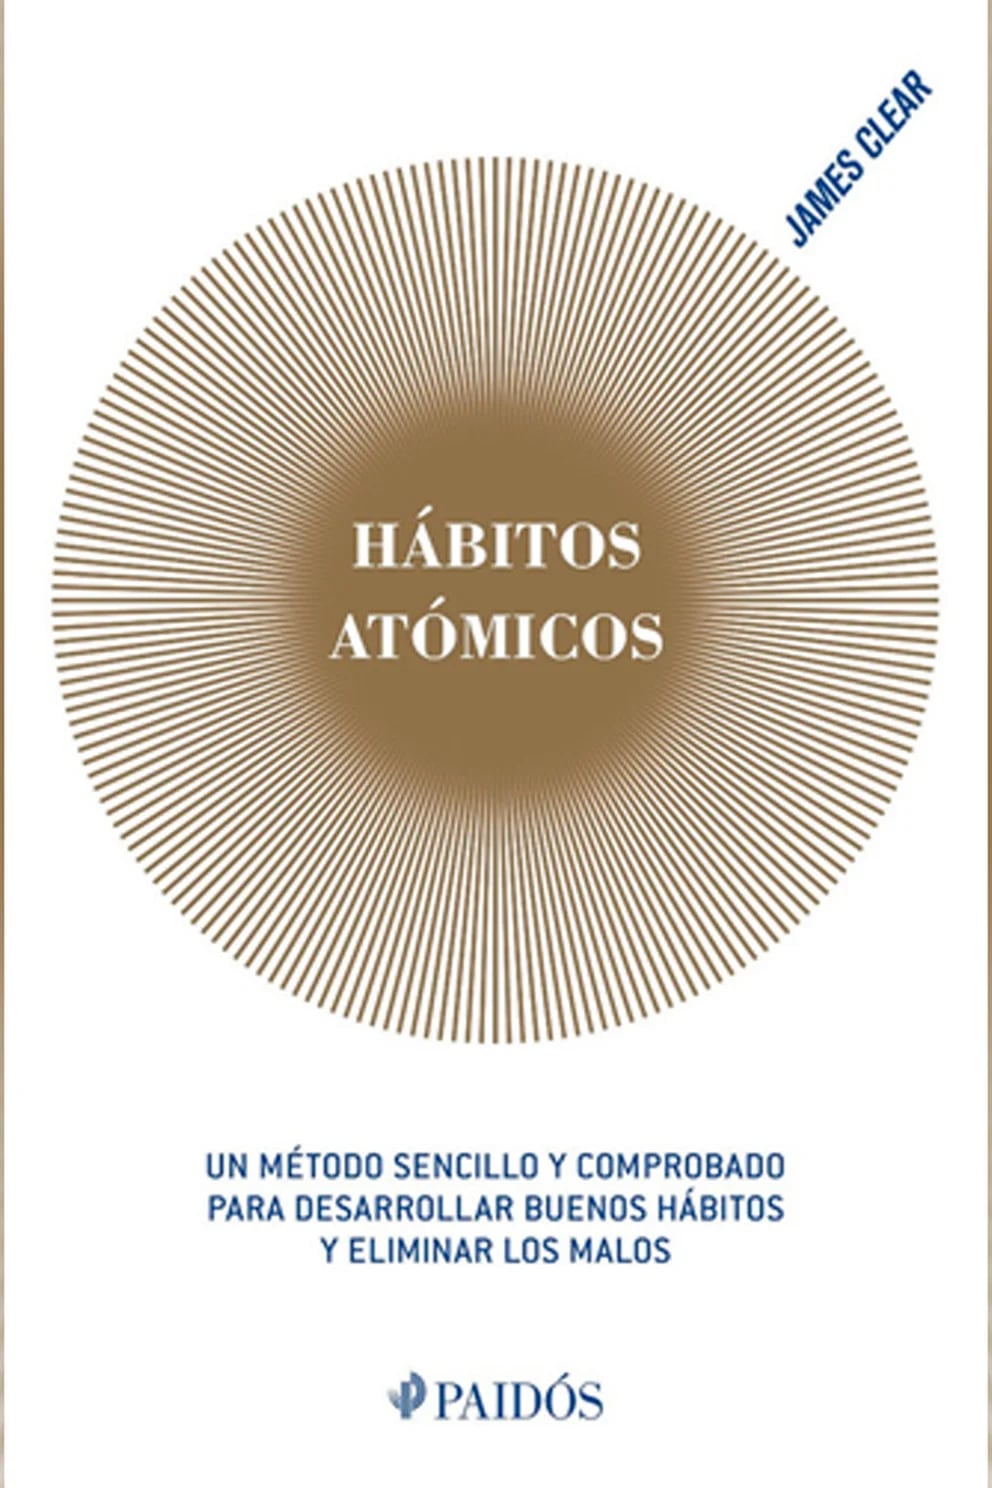 Hábitos atómicos': el libro superventas que transforma vidas de manera  positiva